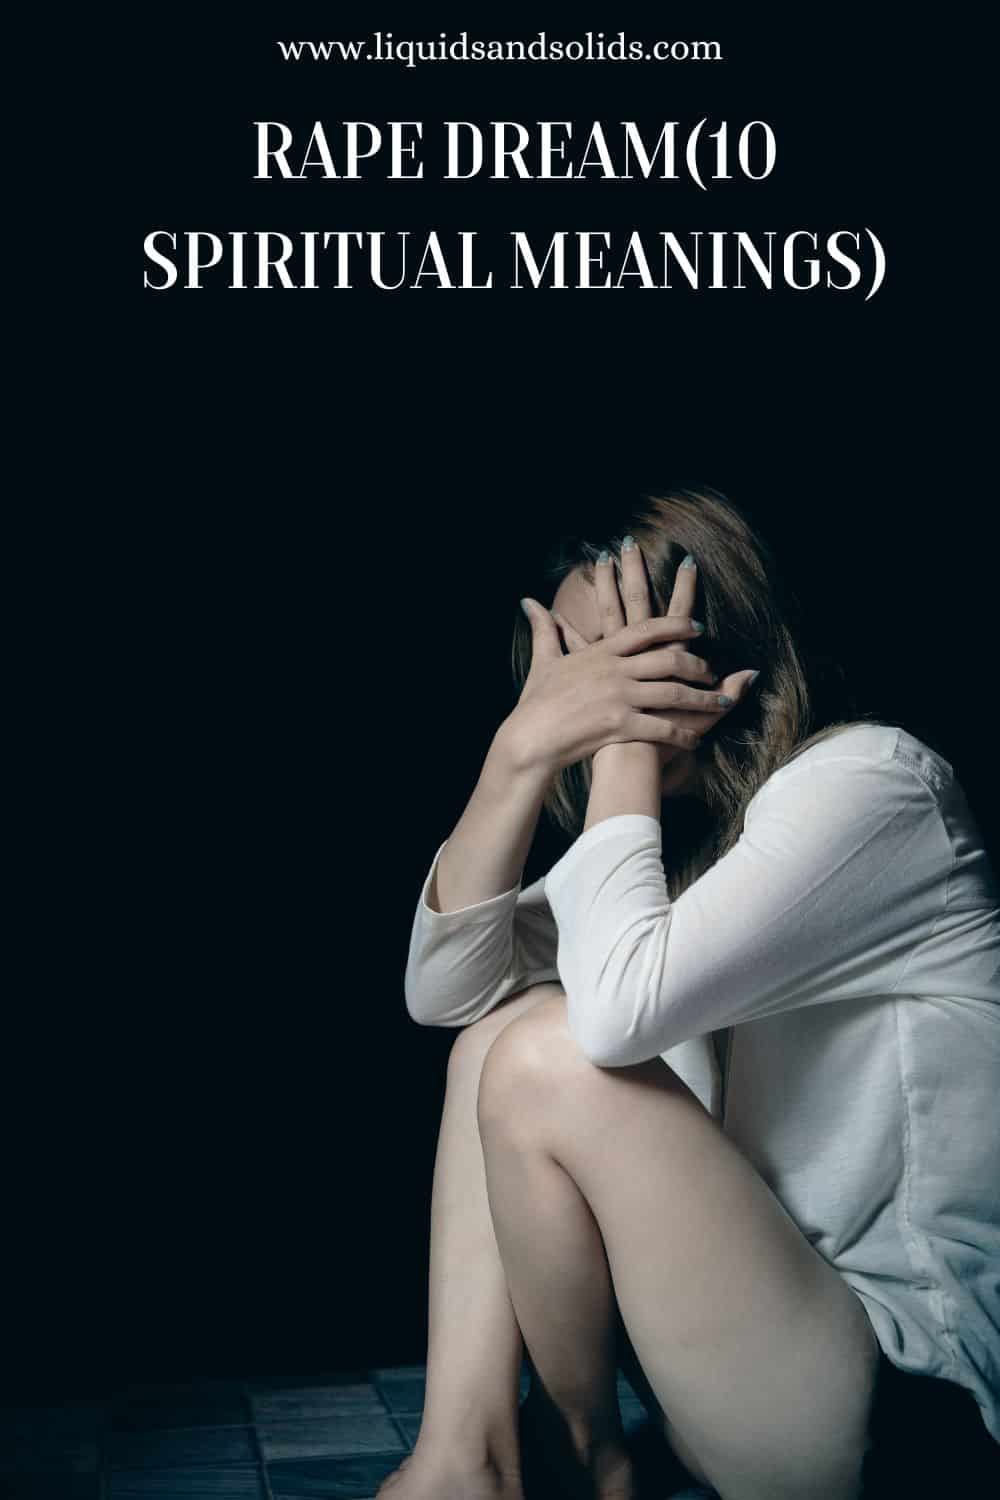  10 åndelige betydninger af voldtægtsdrøm